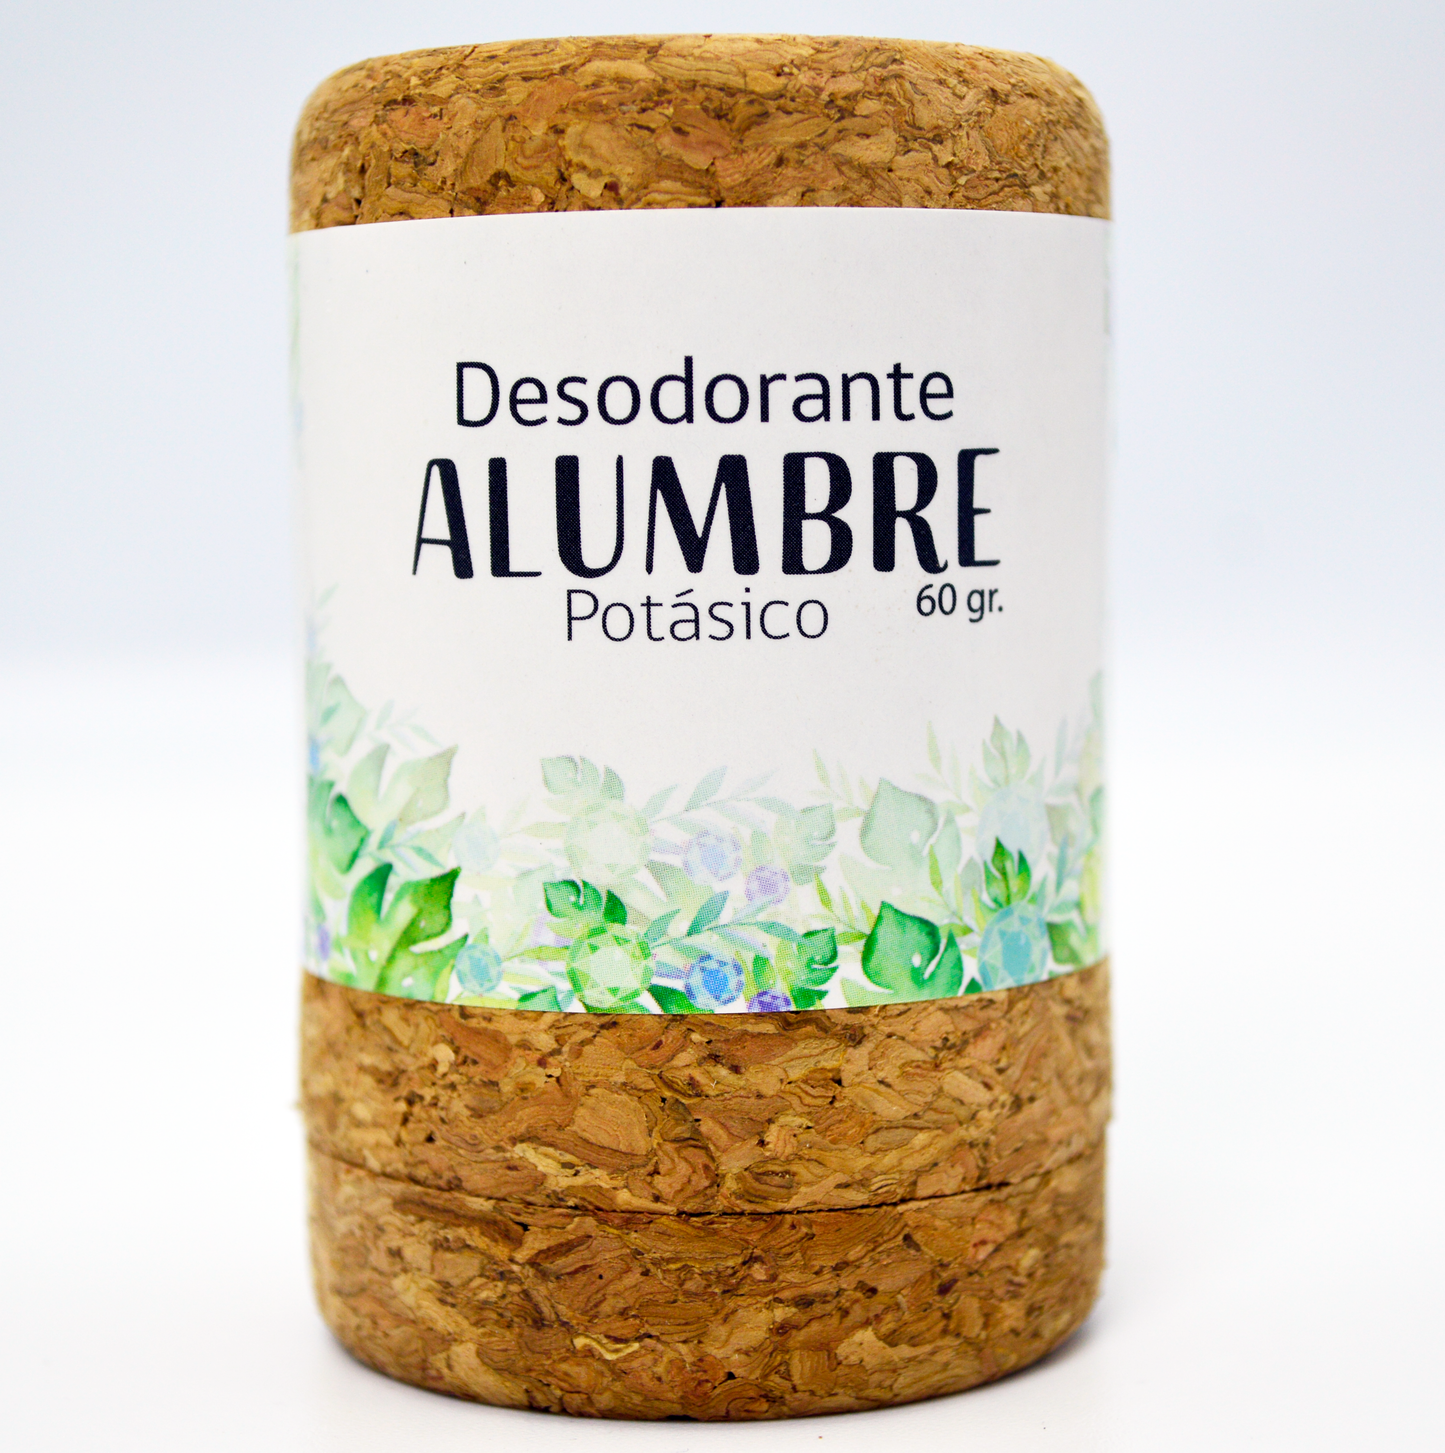 Desodorante Piedra Alumbre HBM + Eco Edición limitada Aniversario